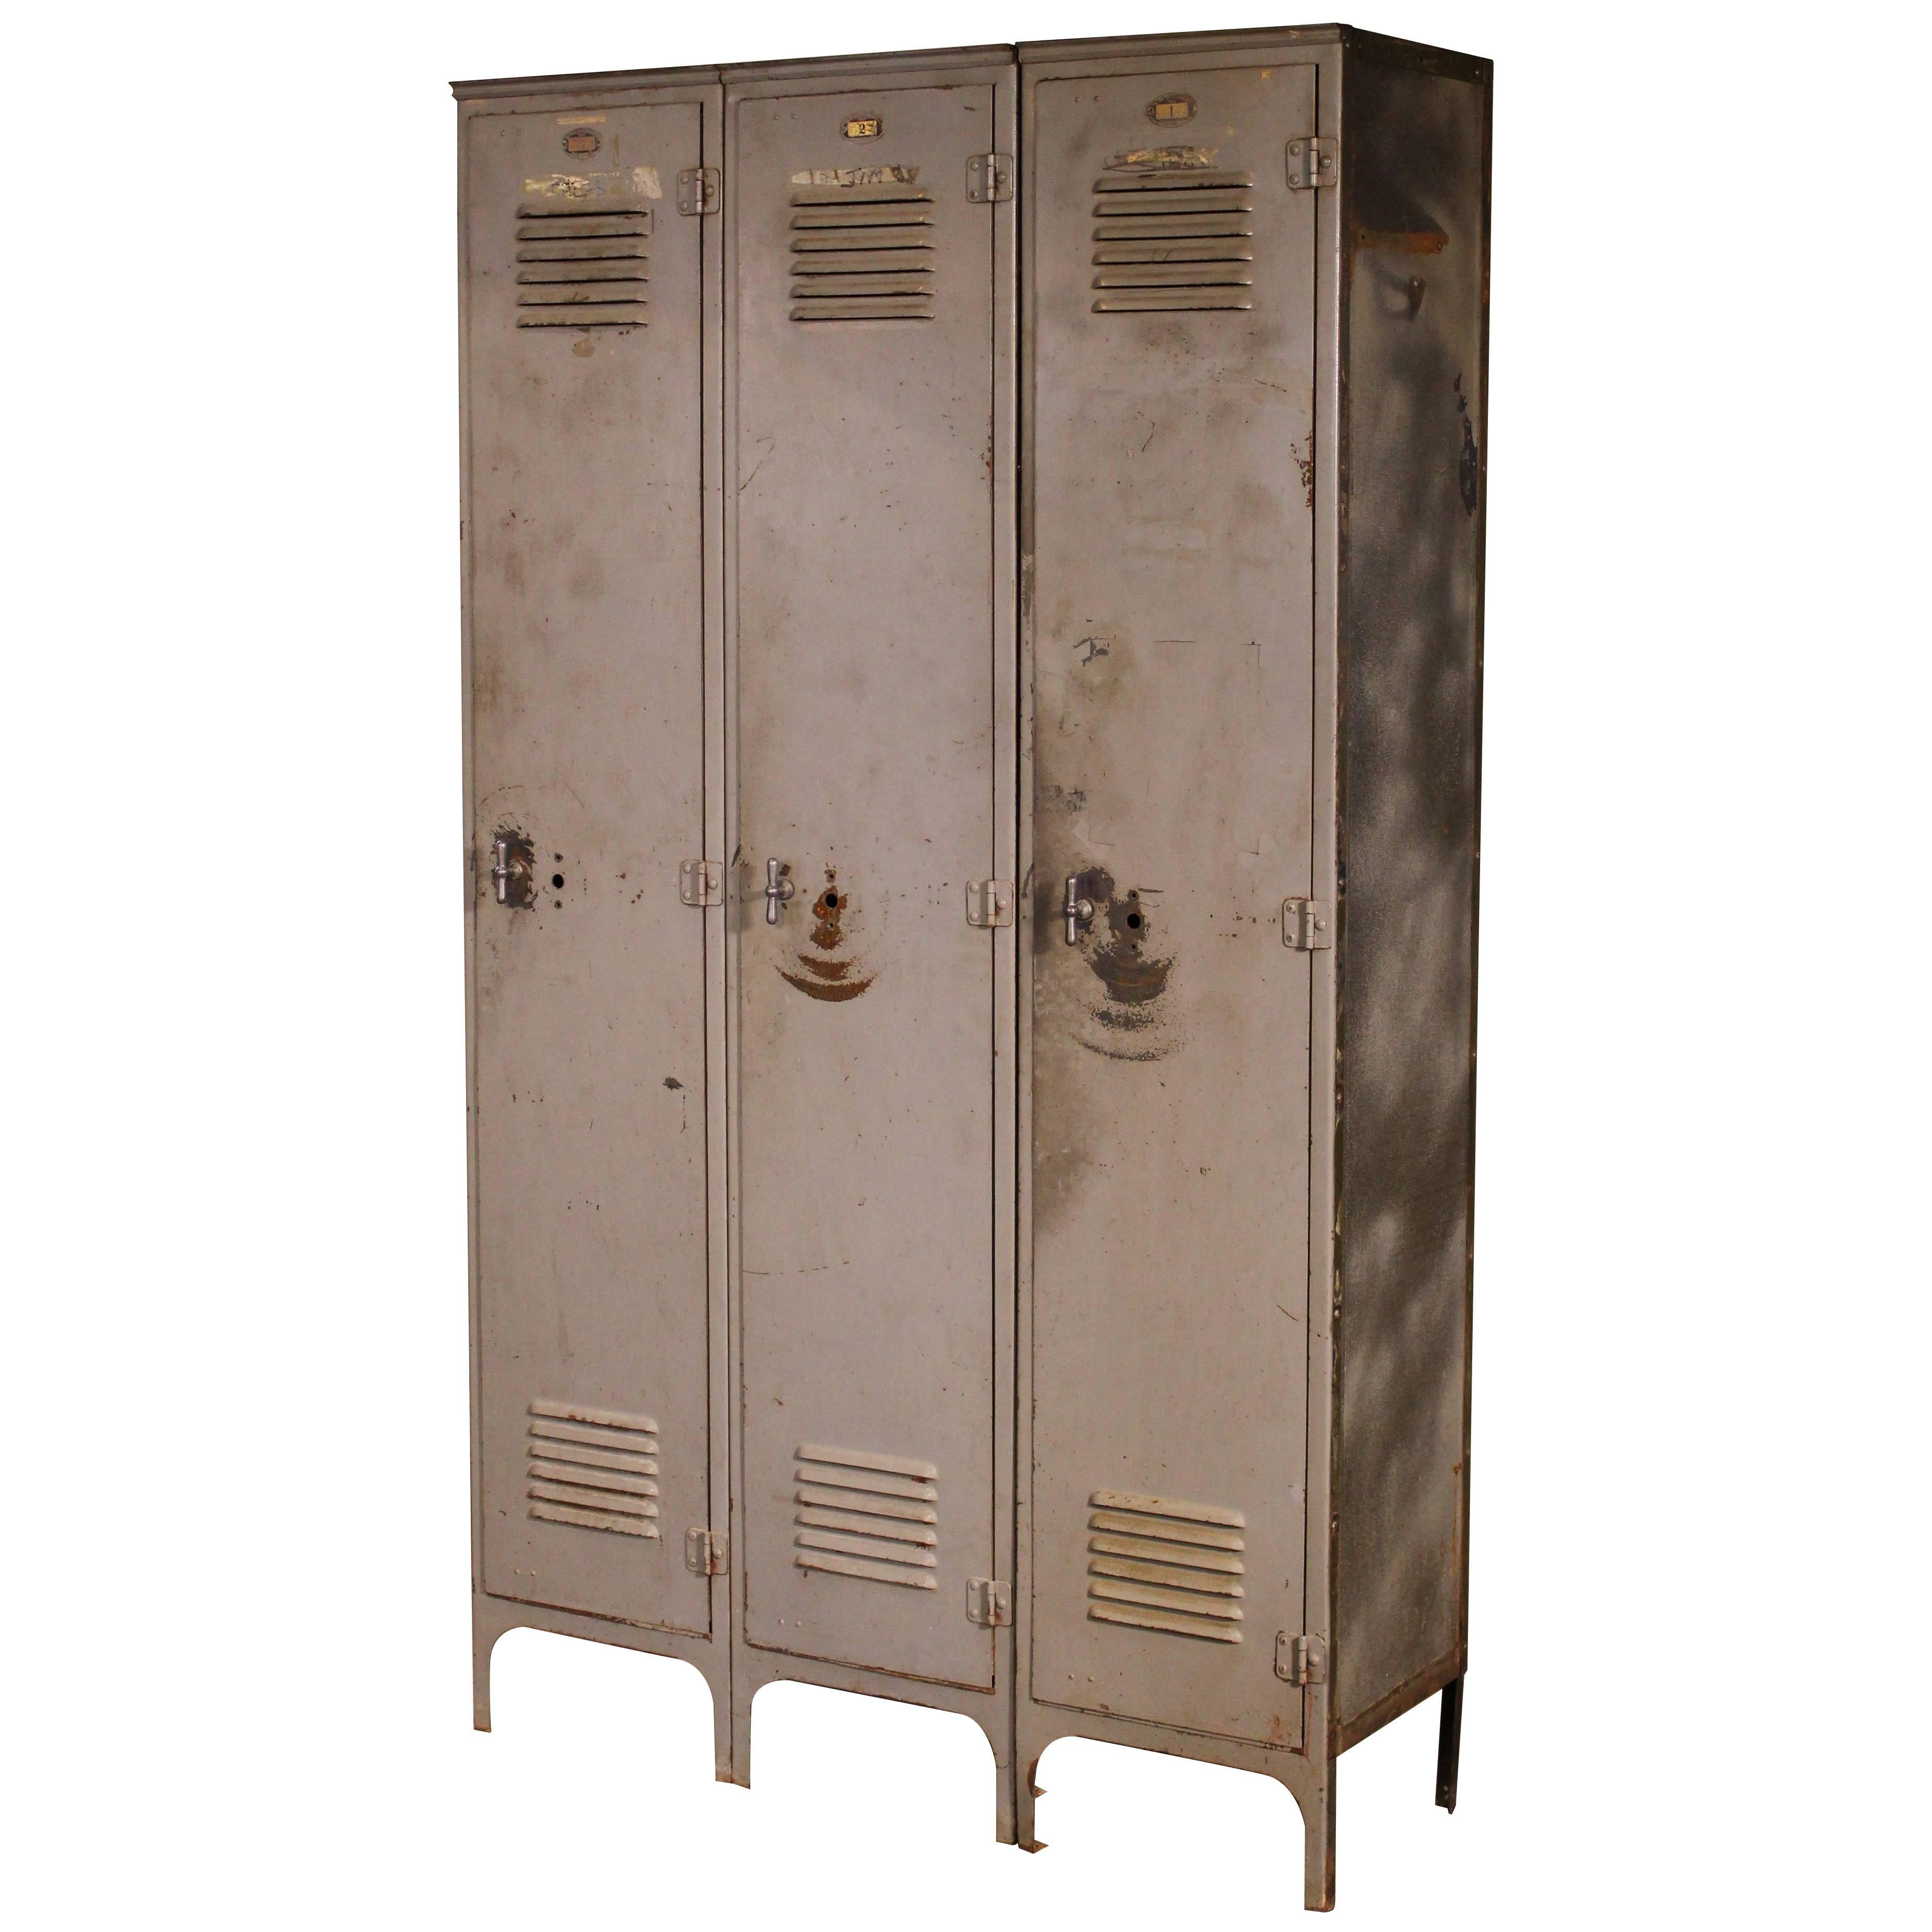 Storage Lockers Vintage Industrial Set of Three Metal Steel Gym School